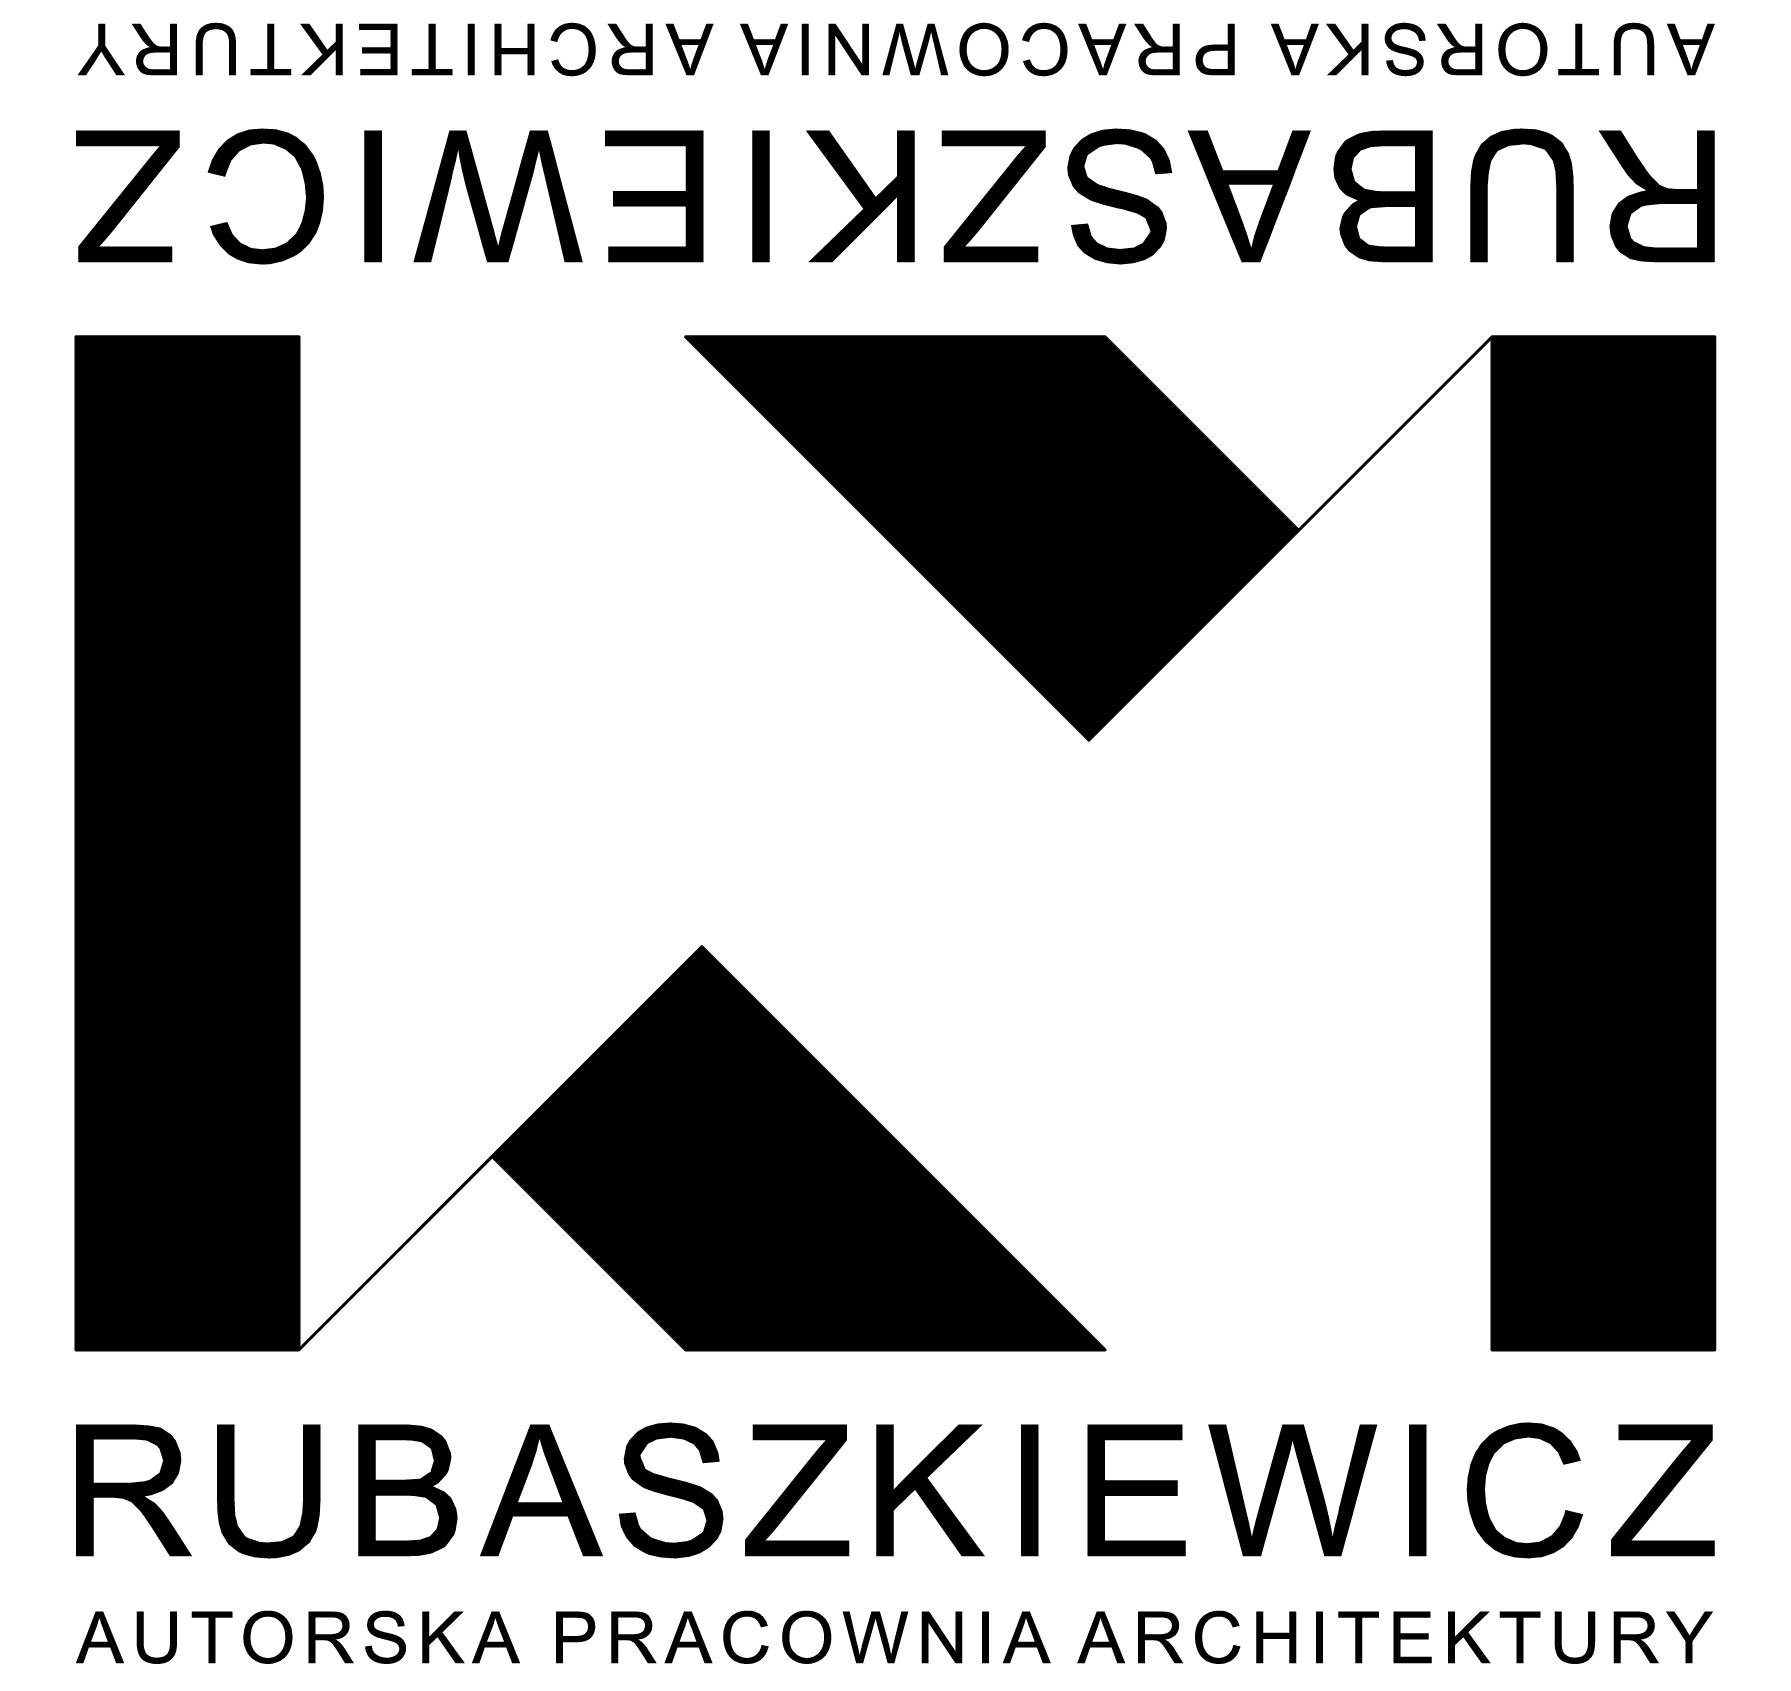 Konrad Rubaszkiewicz